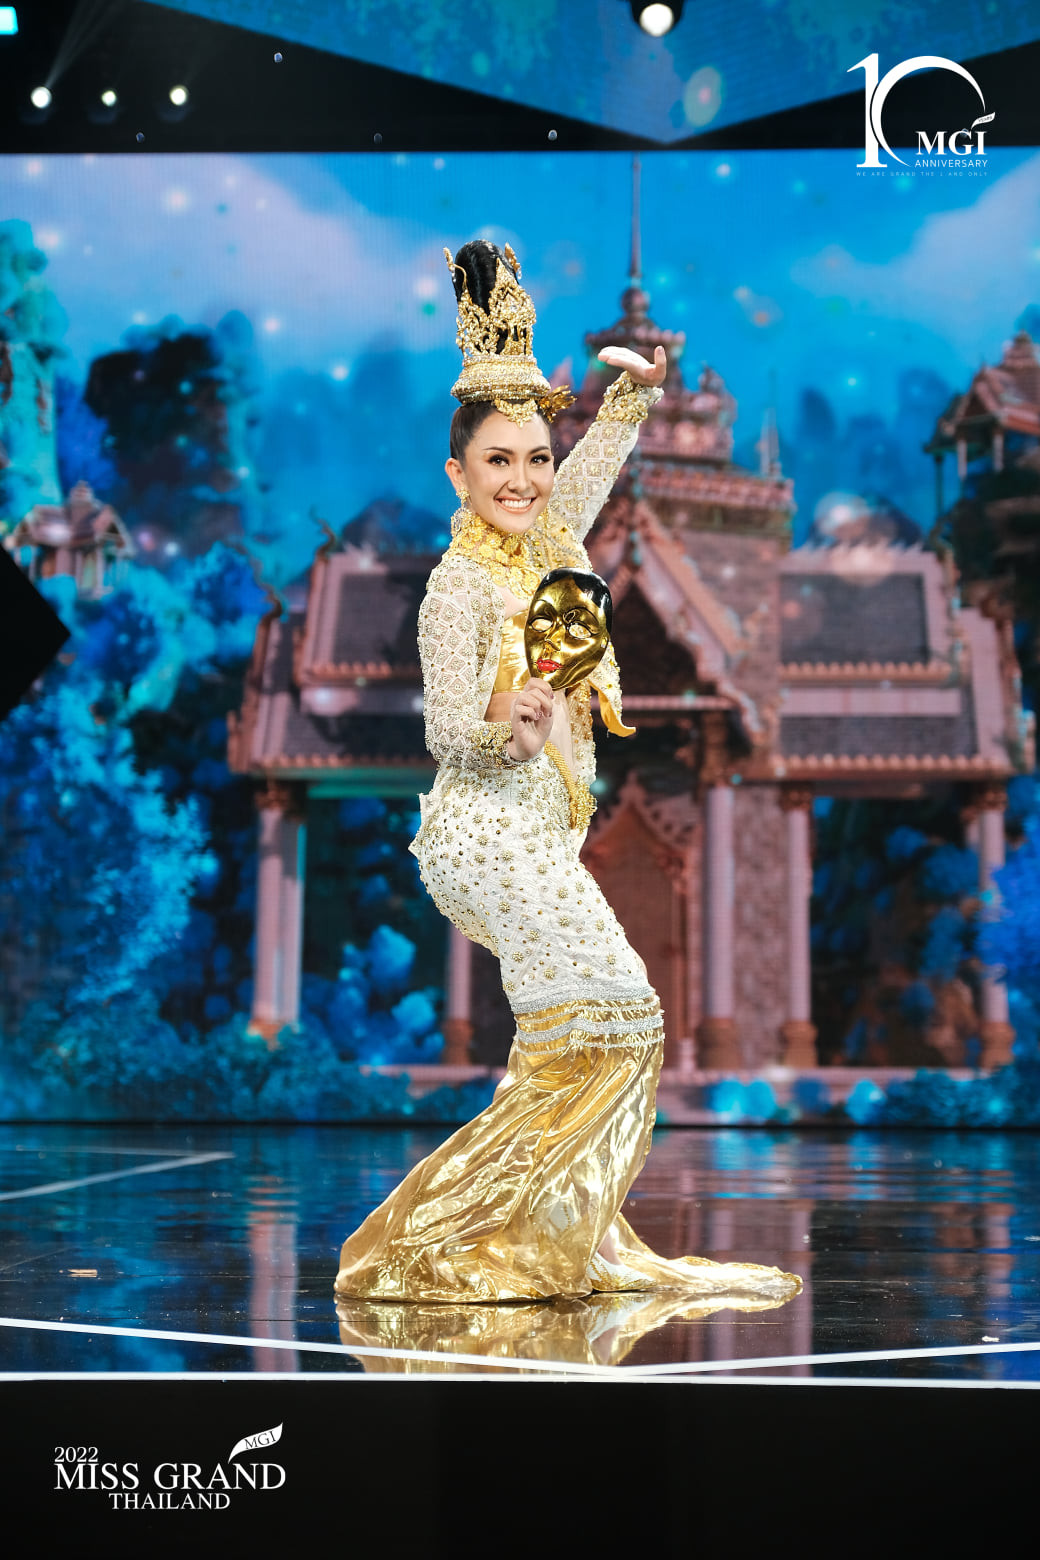 trajes tipicos de candidatas a miss grand thailand 2022. - Página 2 VZUlAx